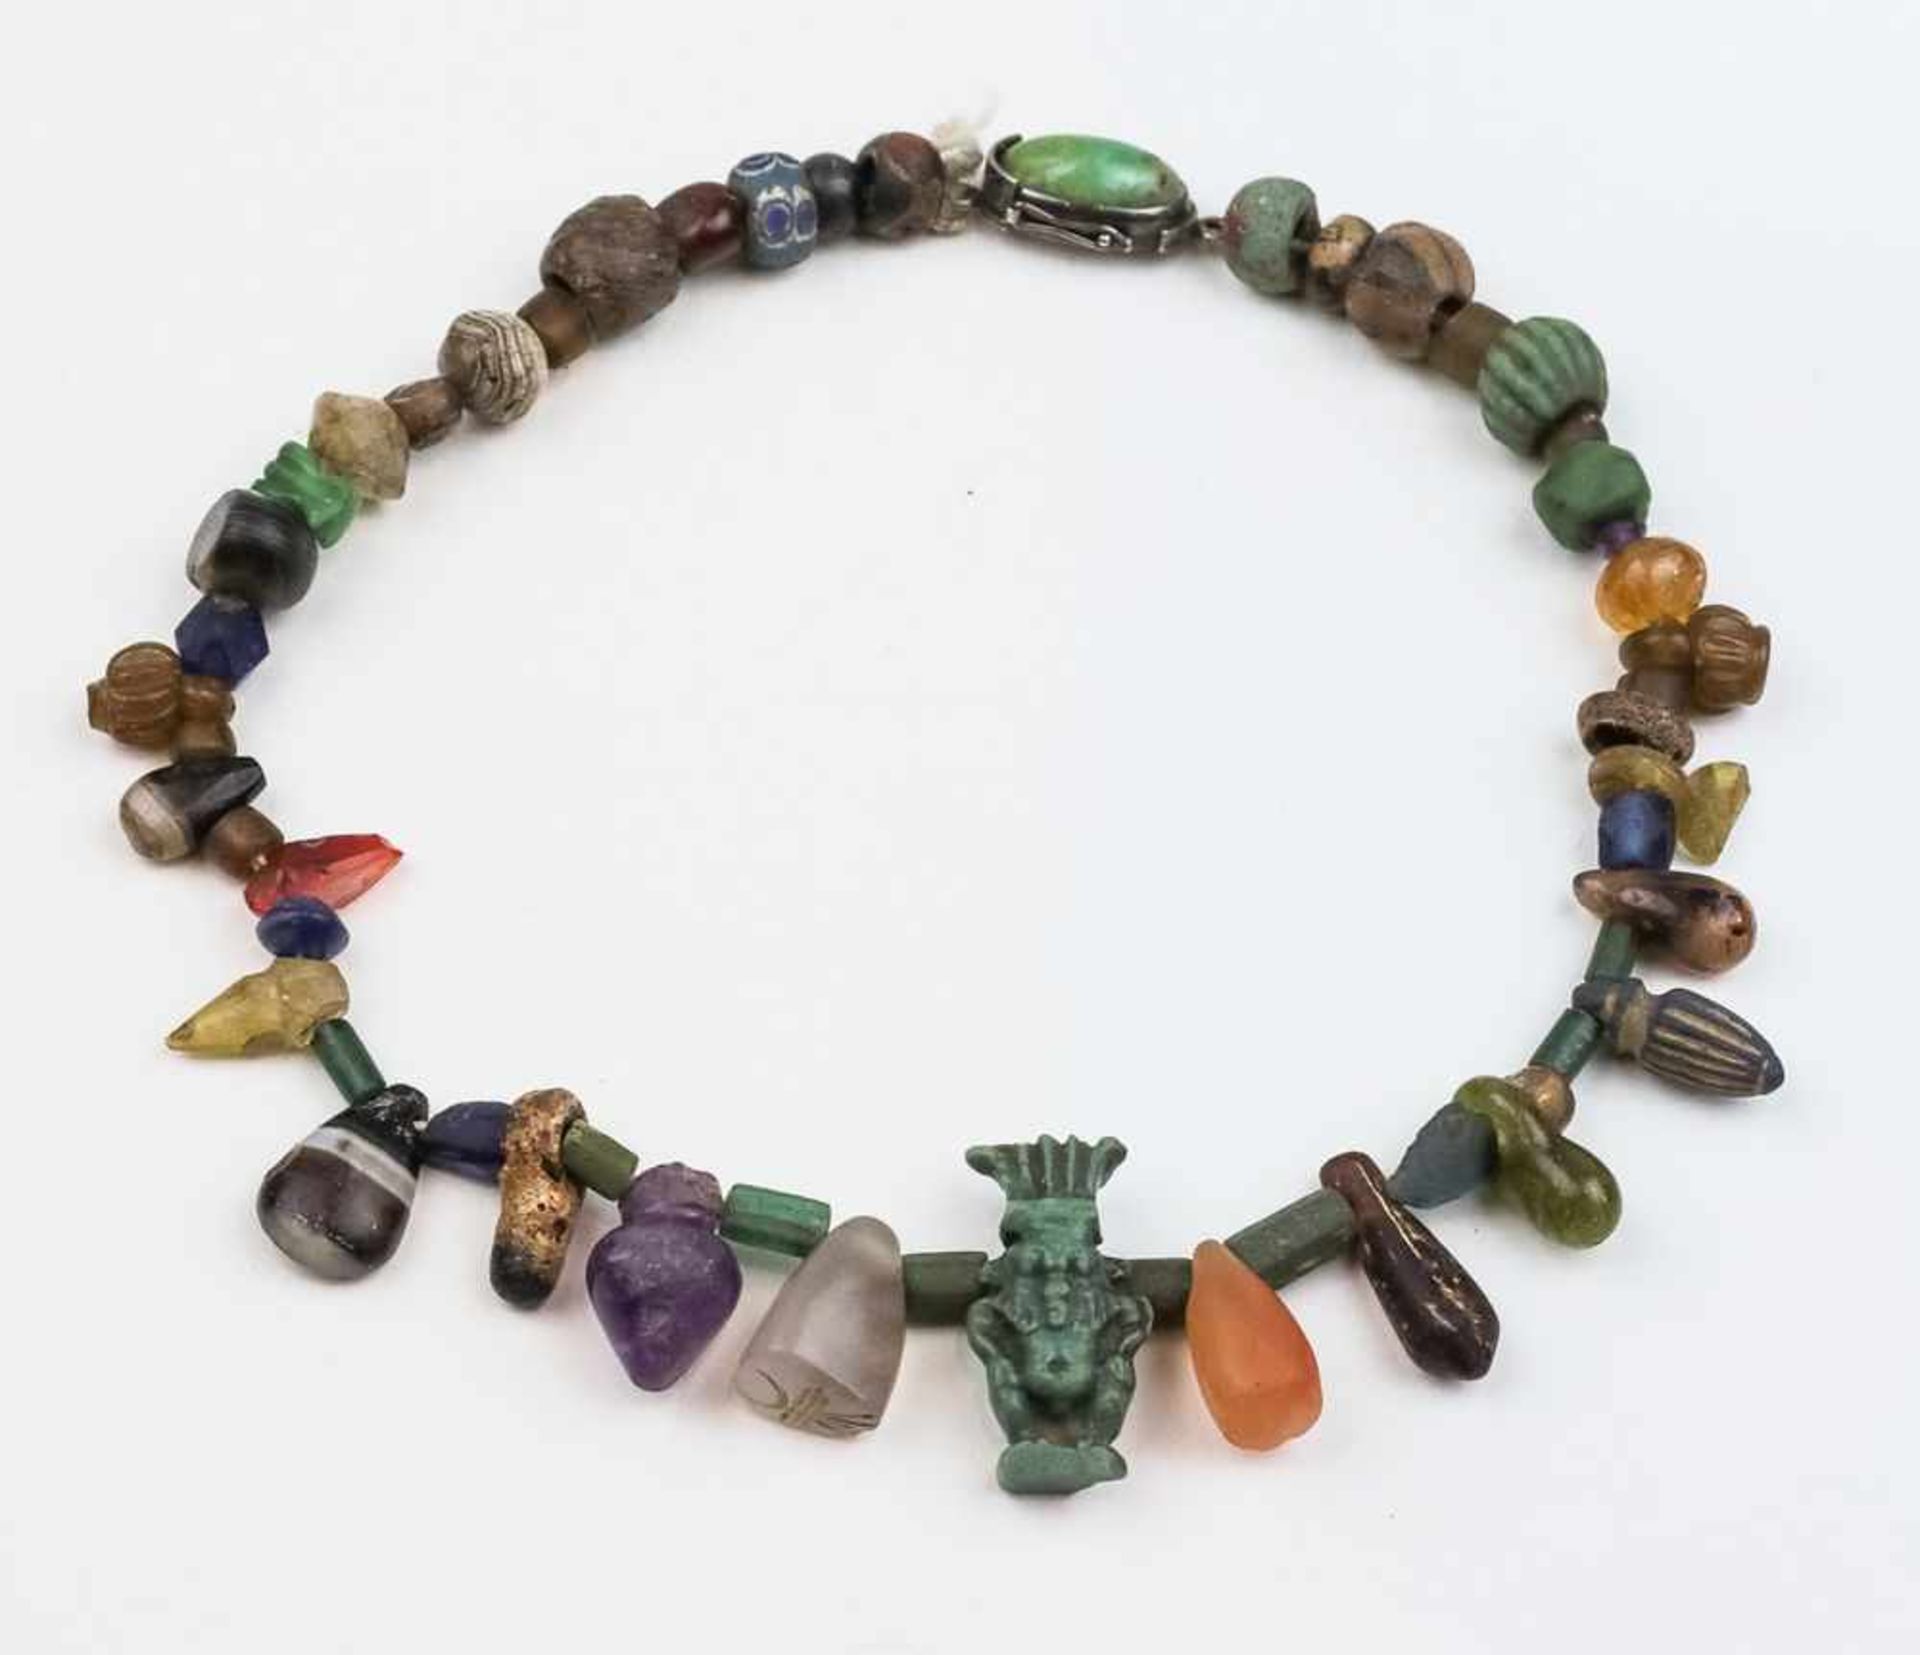 Halskette mit zahlreichen Amulett-Anhängern, wie dem Schutzgott Bes aus Fayence, Glasperlen und tlw.